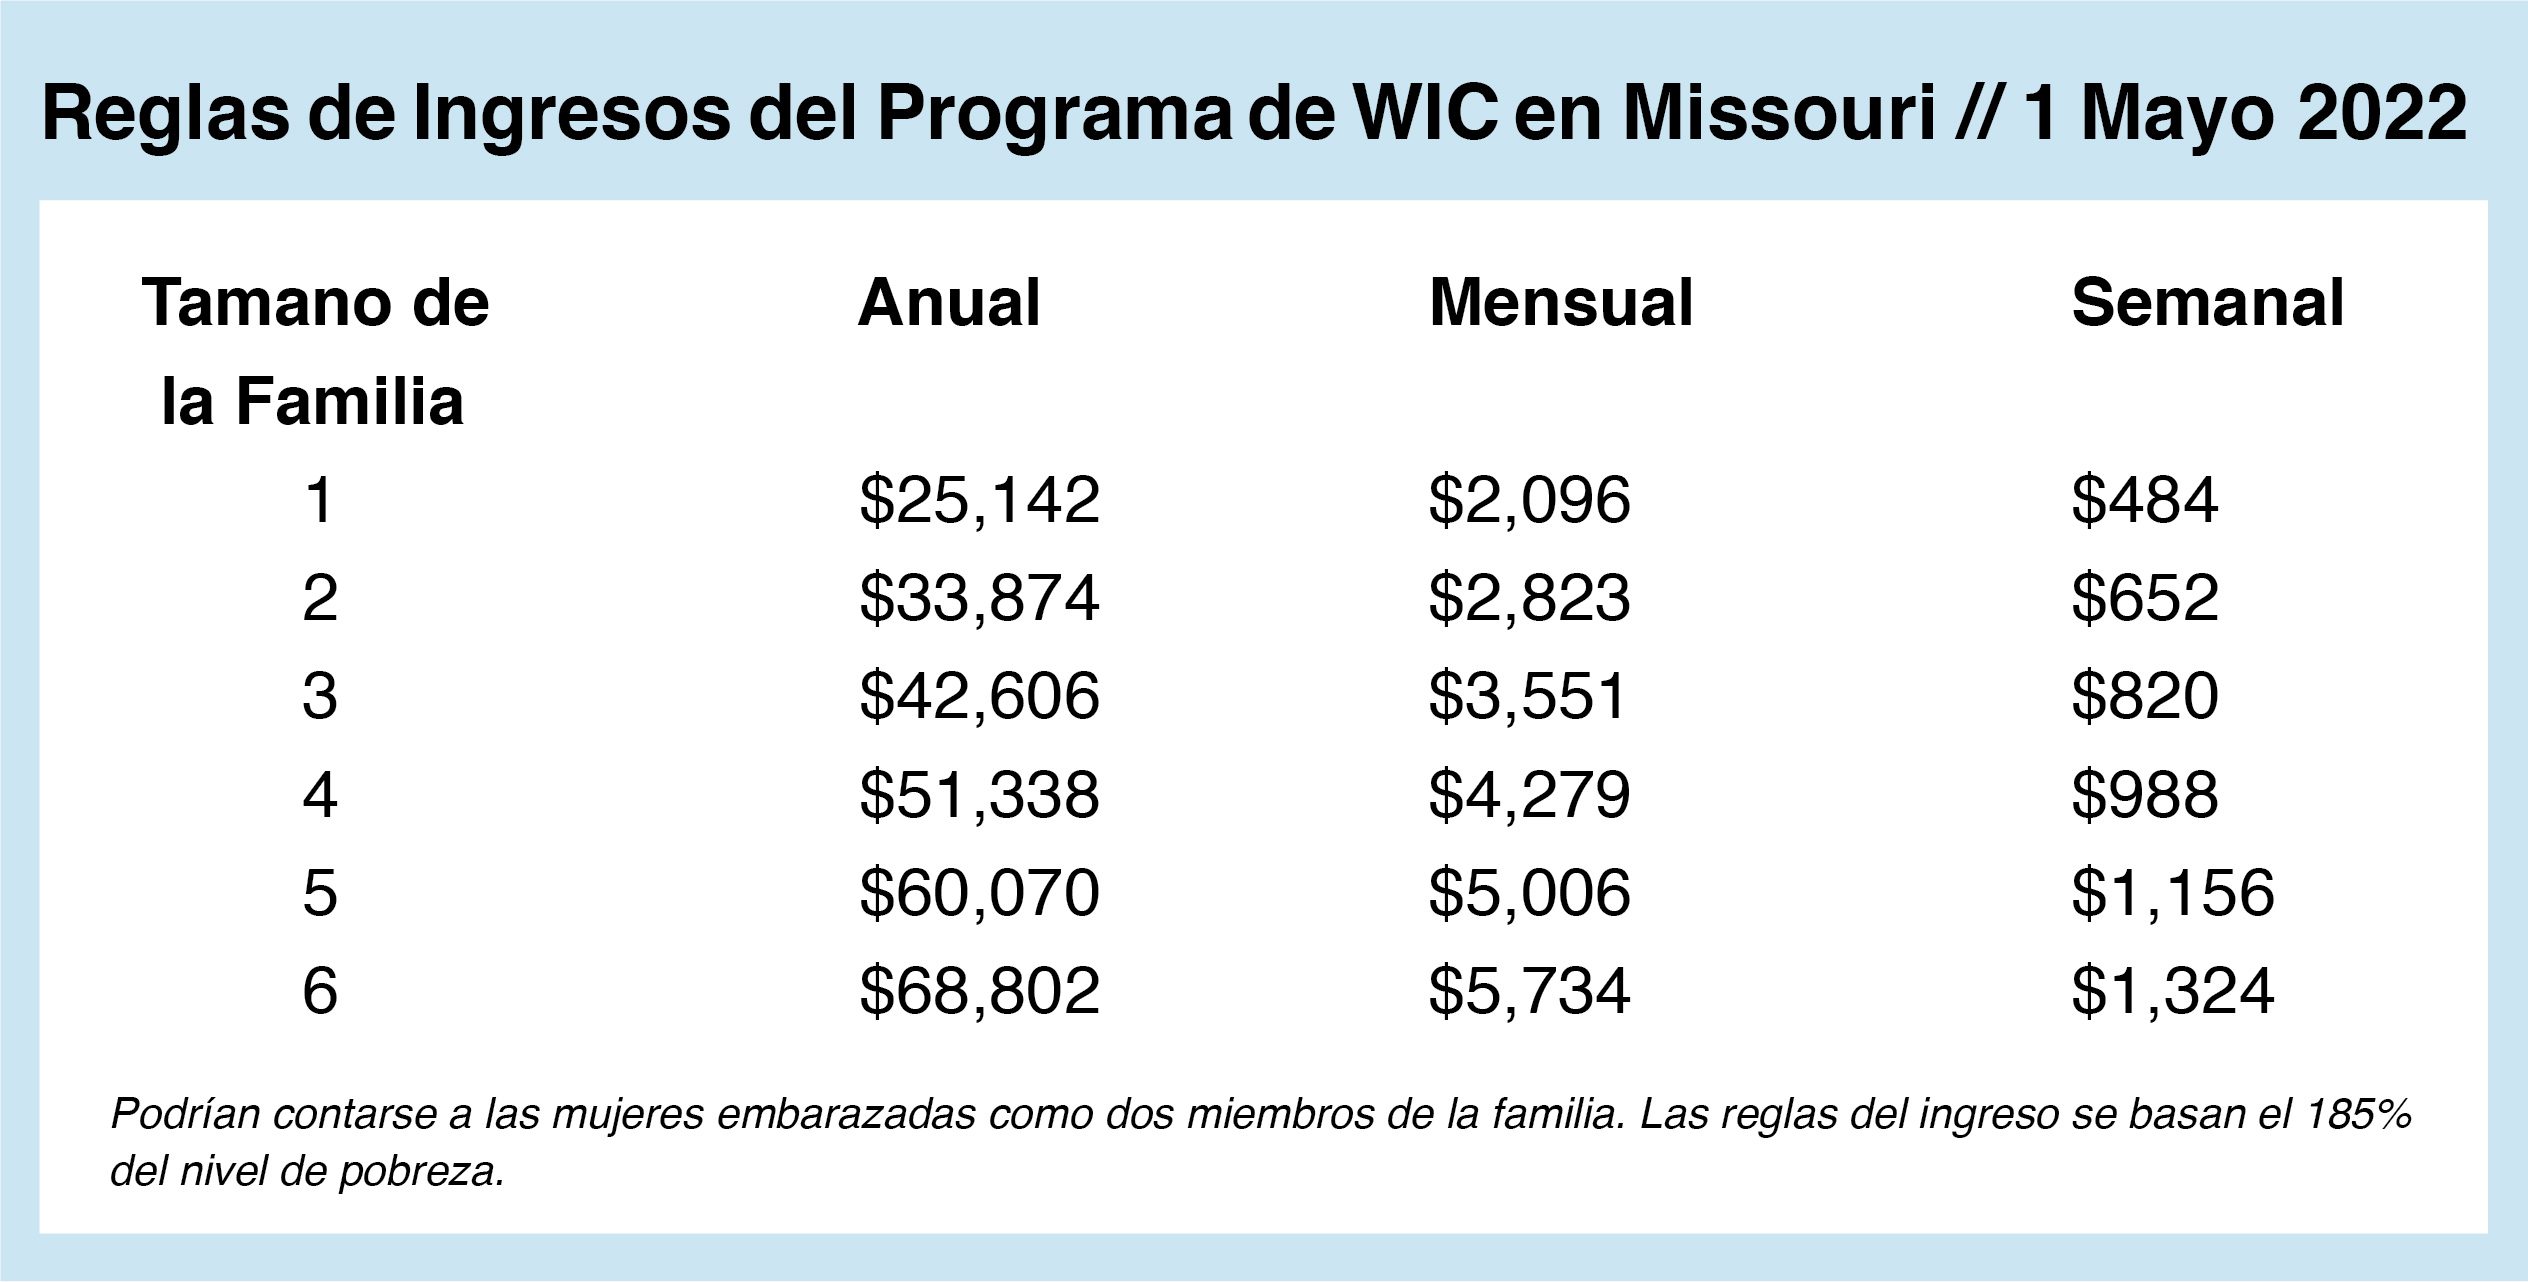 Missouri WIC Income Guidelines